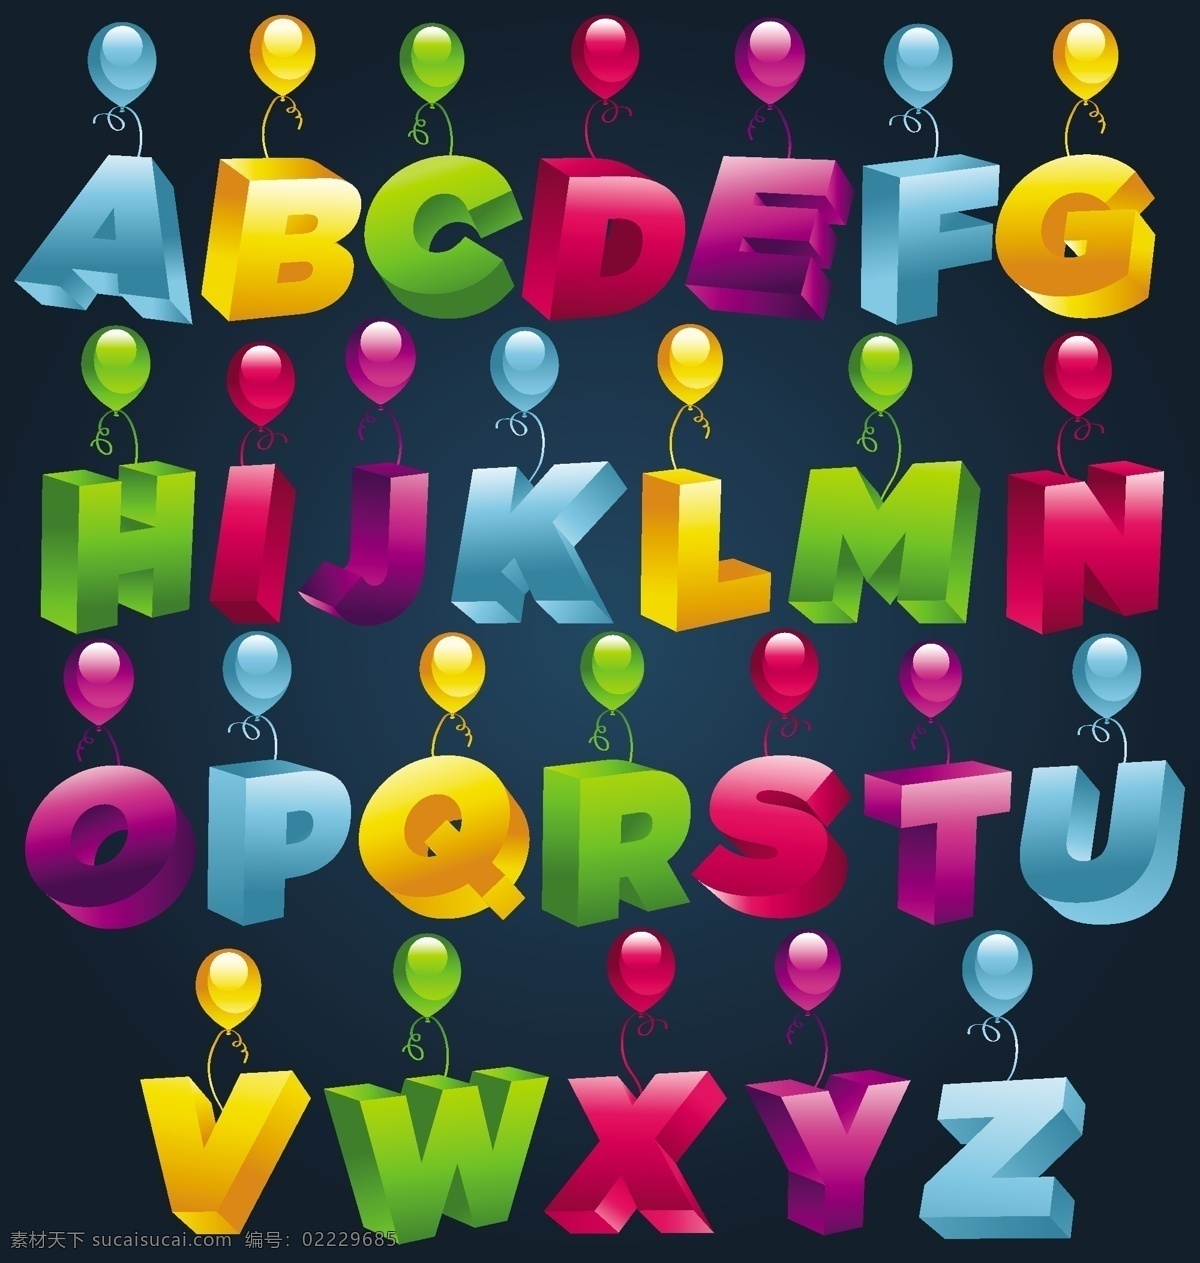 3d 立体 字母 数字 矢量 阿拉伯数字 彩色 气球 矢量素材 英文字母 质感 倾斜 29字母 y大宝 矢量图 其他矢量图